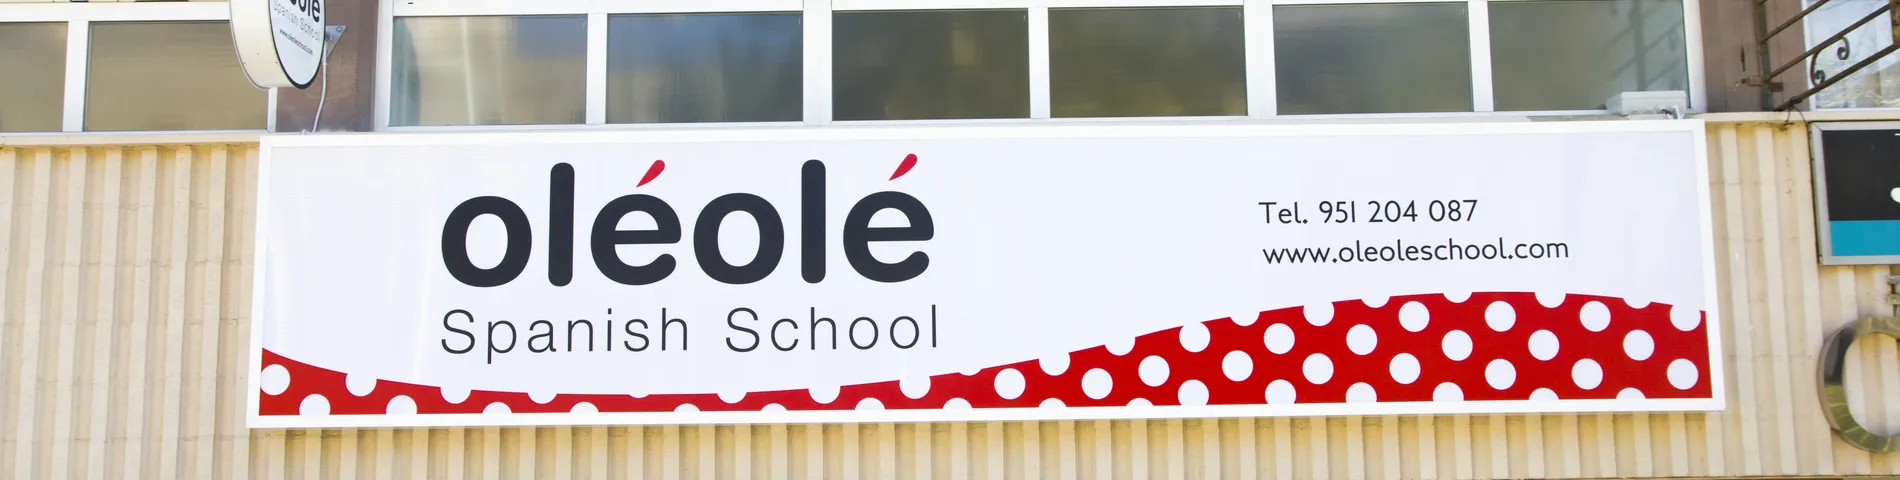 OléOlé Spanish School bild 1